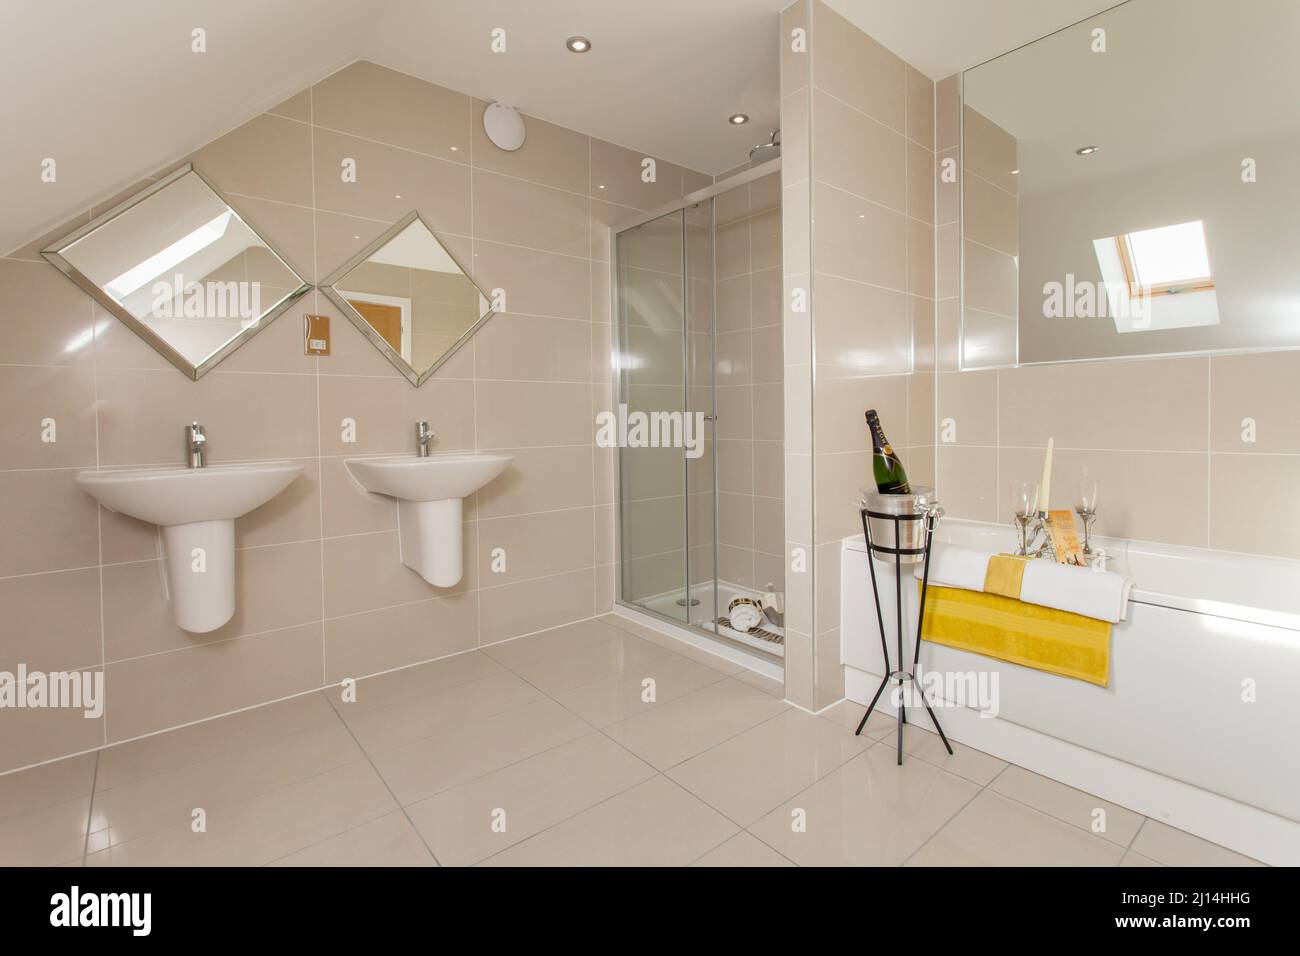 Champán al lado de la bañera en un moderno baño con inodoro, cabina de ducha, lavabos para él y ella, lavabos, azulejos en todo el hotel. Foto de stock